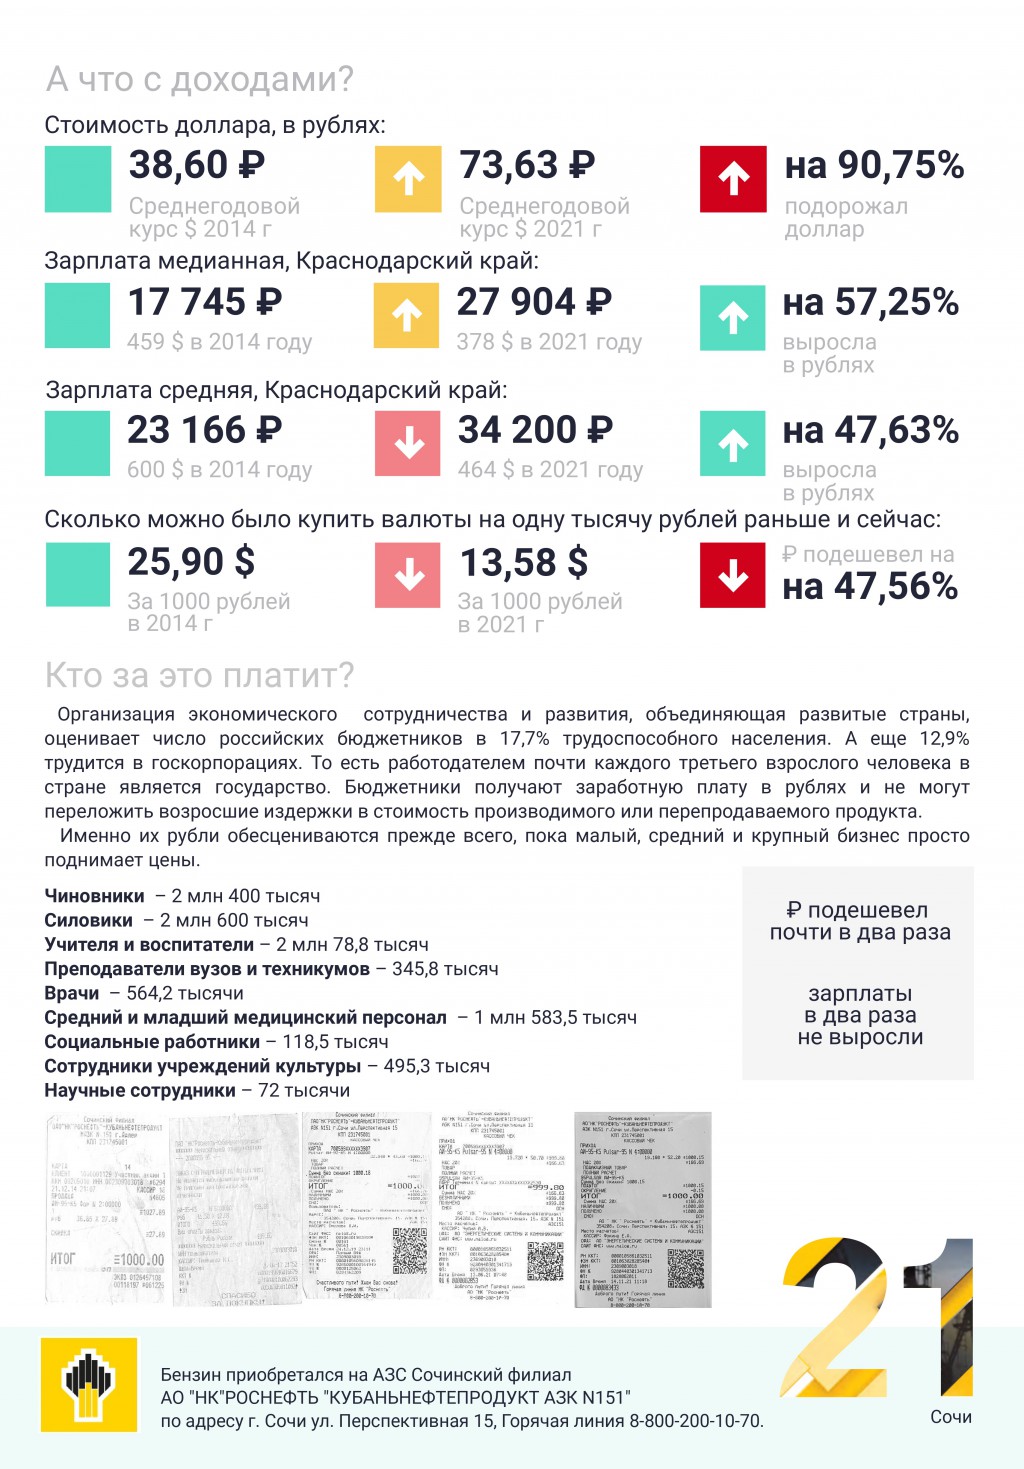 1000 рублей в пересчете на стоимость доллара и данные по зарплатам